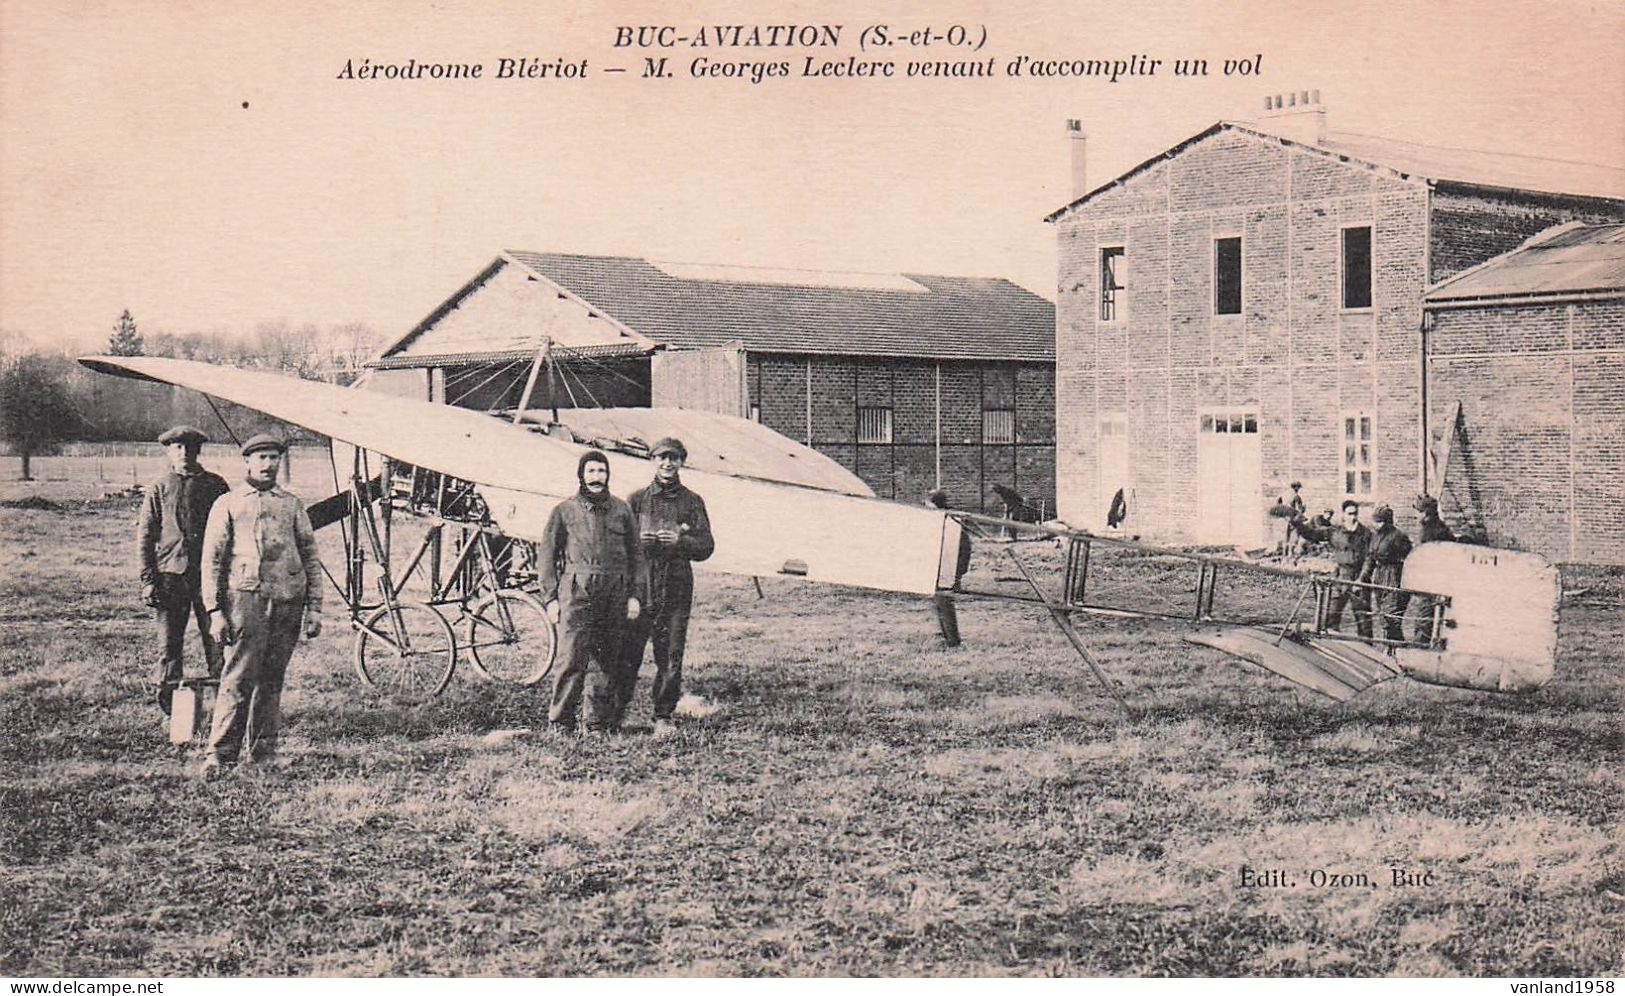 BUC-AVIATION-aérodrome Blériot-Mr Georges Leclerc Venant D'accomplir Un Vol - Buc